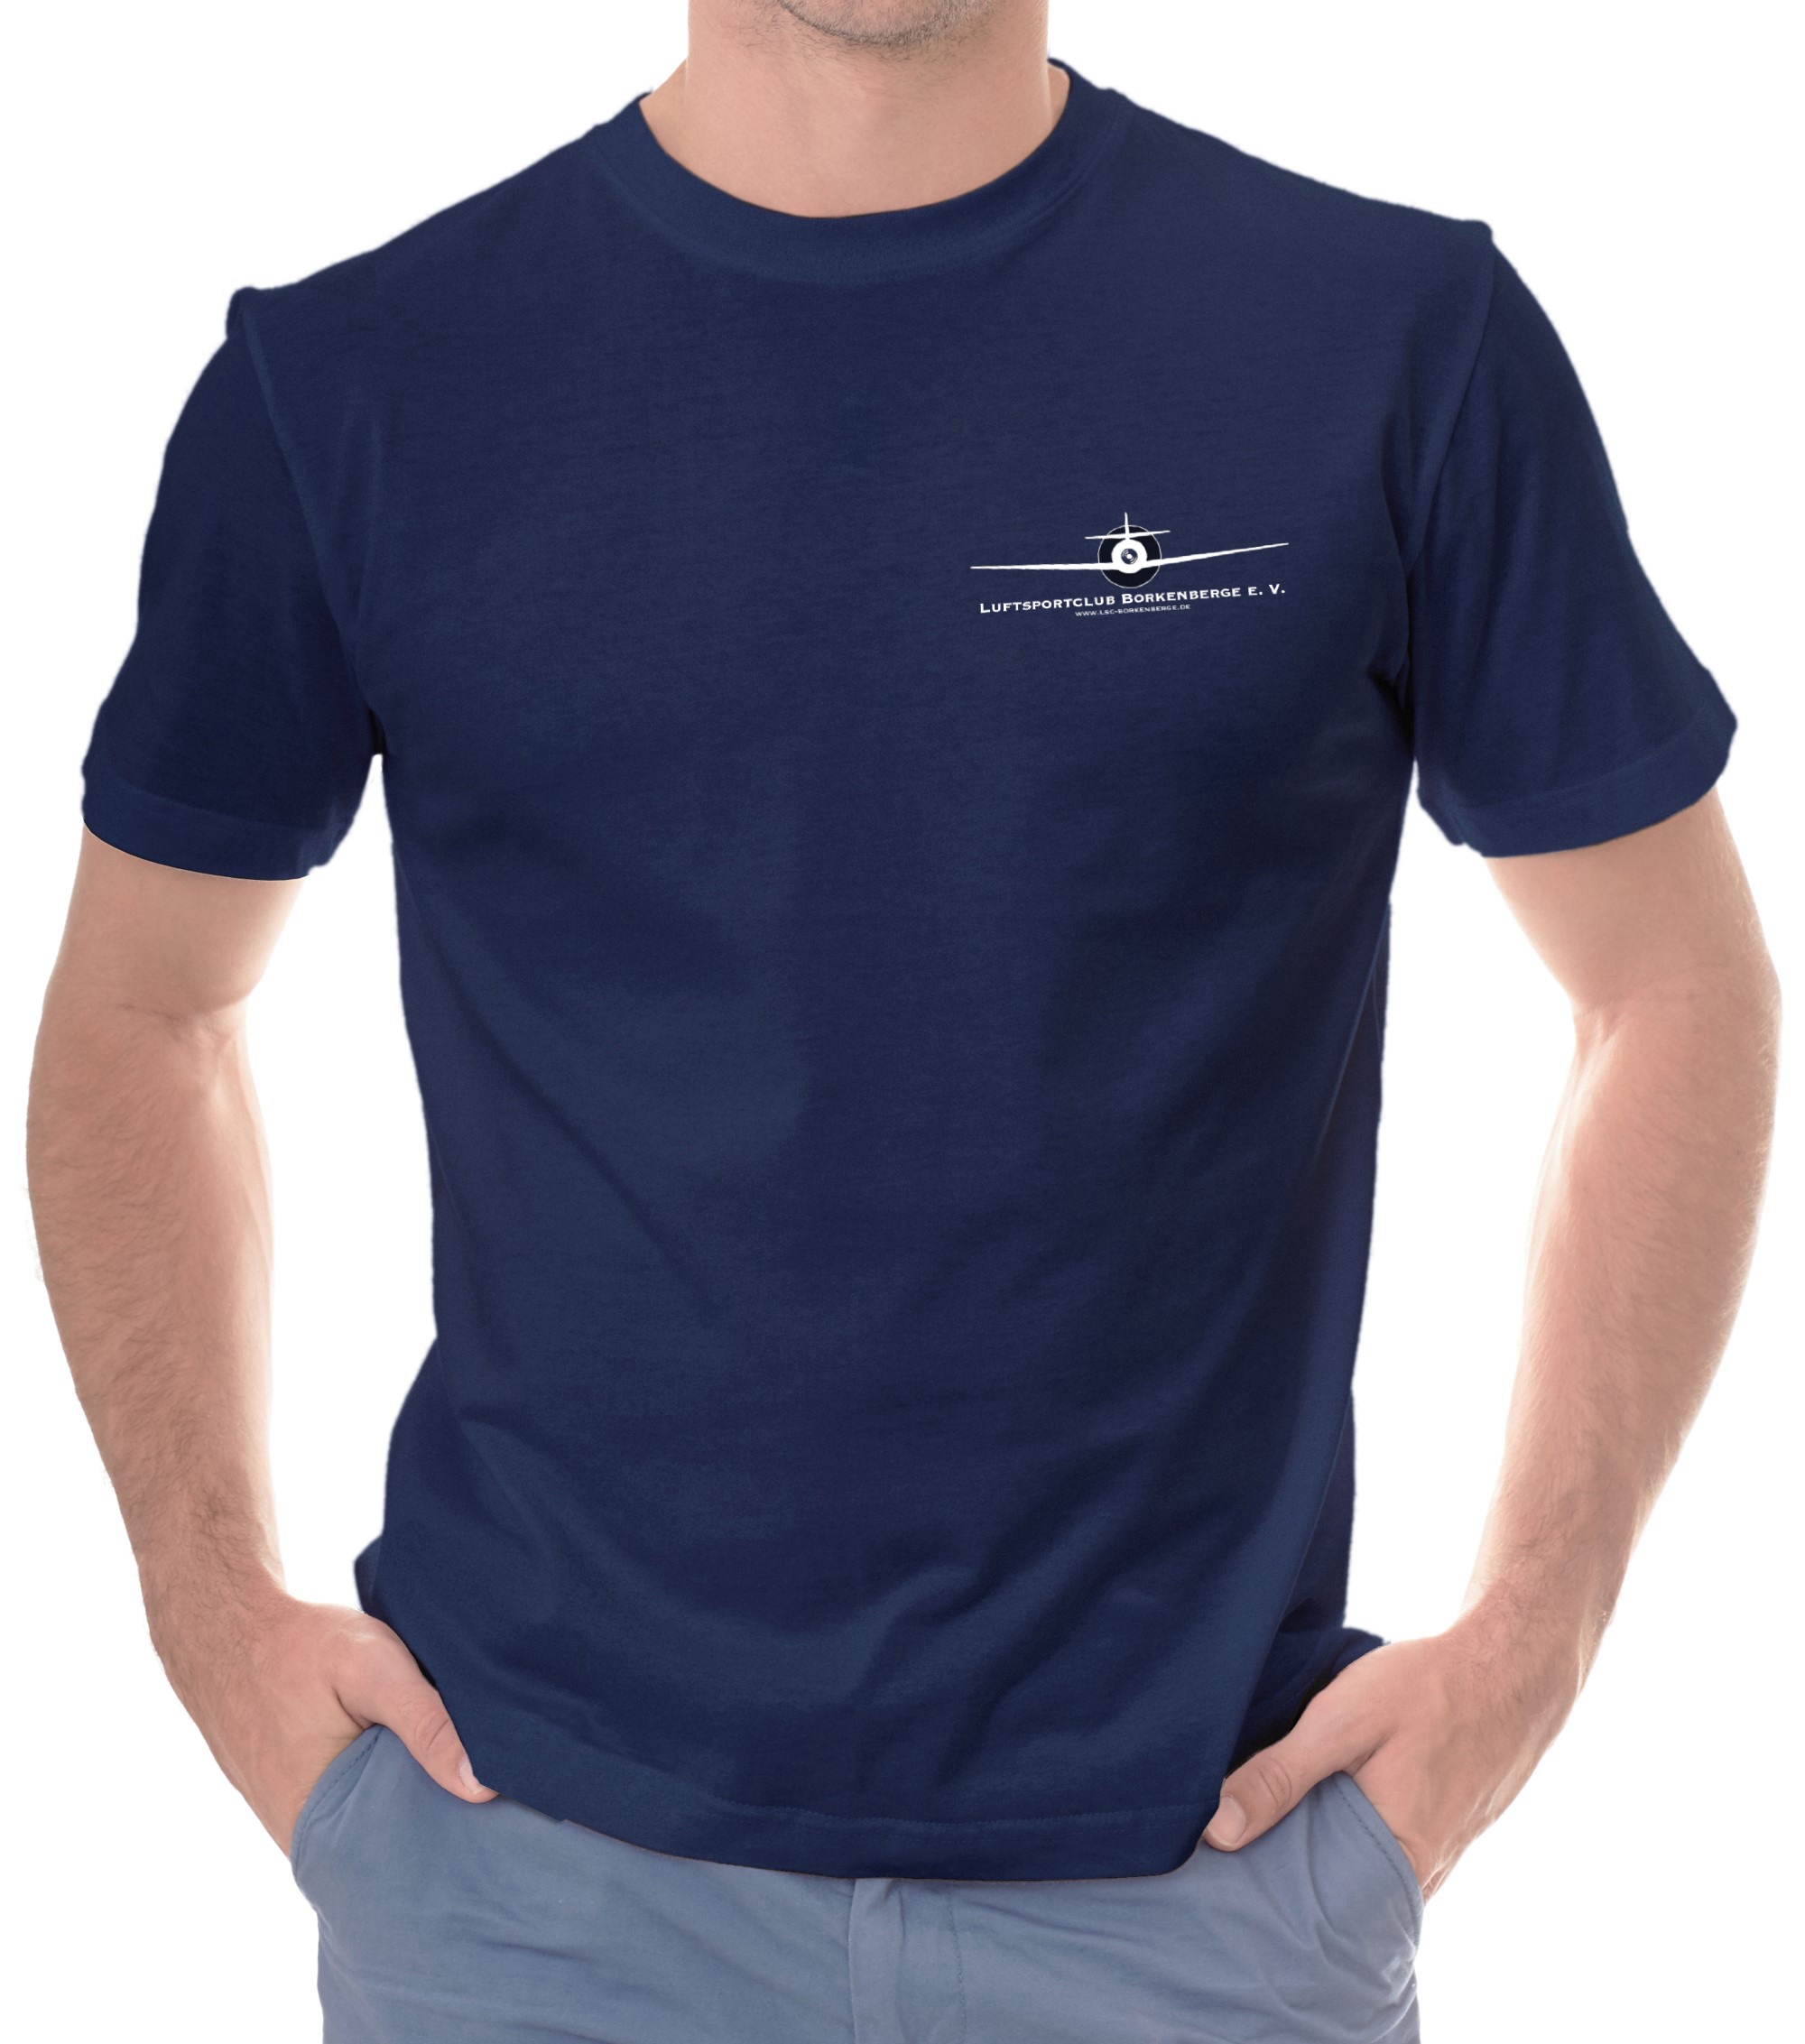 Herren BASIC-T-Shirt LSC Borkenberge e.V.